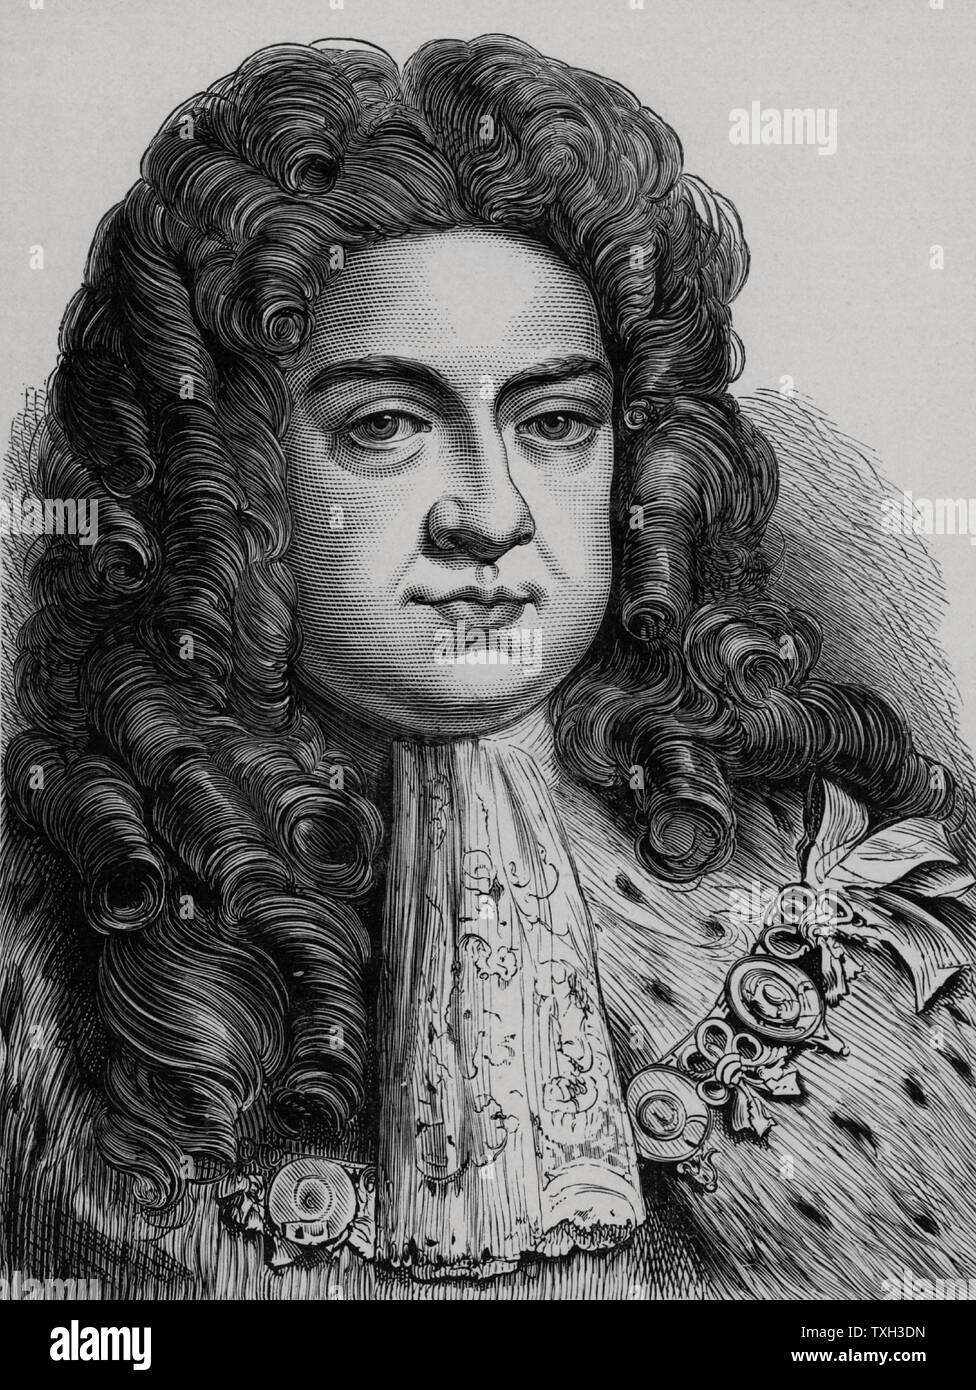 George I (1660-1727) Roi de Grande-Bretagne et d'Irlande de 1714, l'Électeur de Hanovre à partir de 1798. Premier monarque hanovriens du Royaume-Uni. La gravure sur bois c1900. Banque D'Images